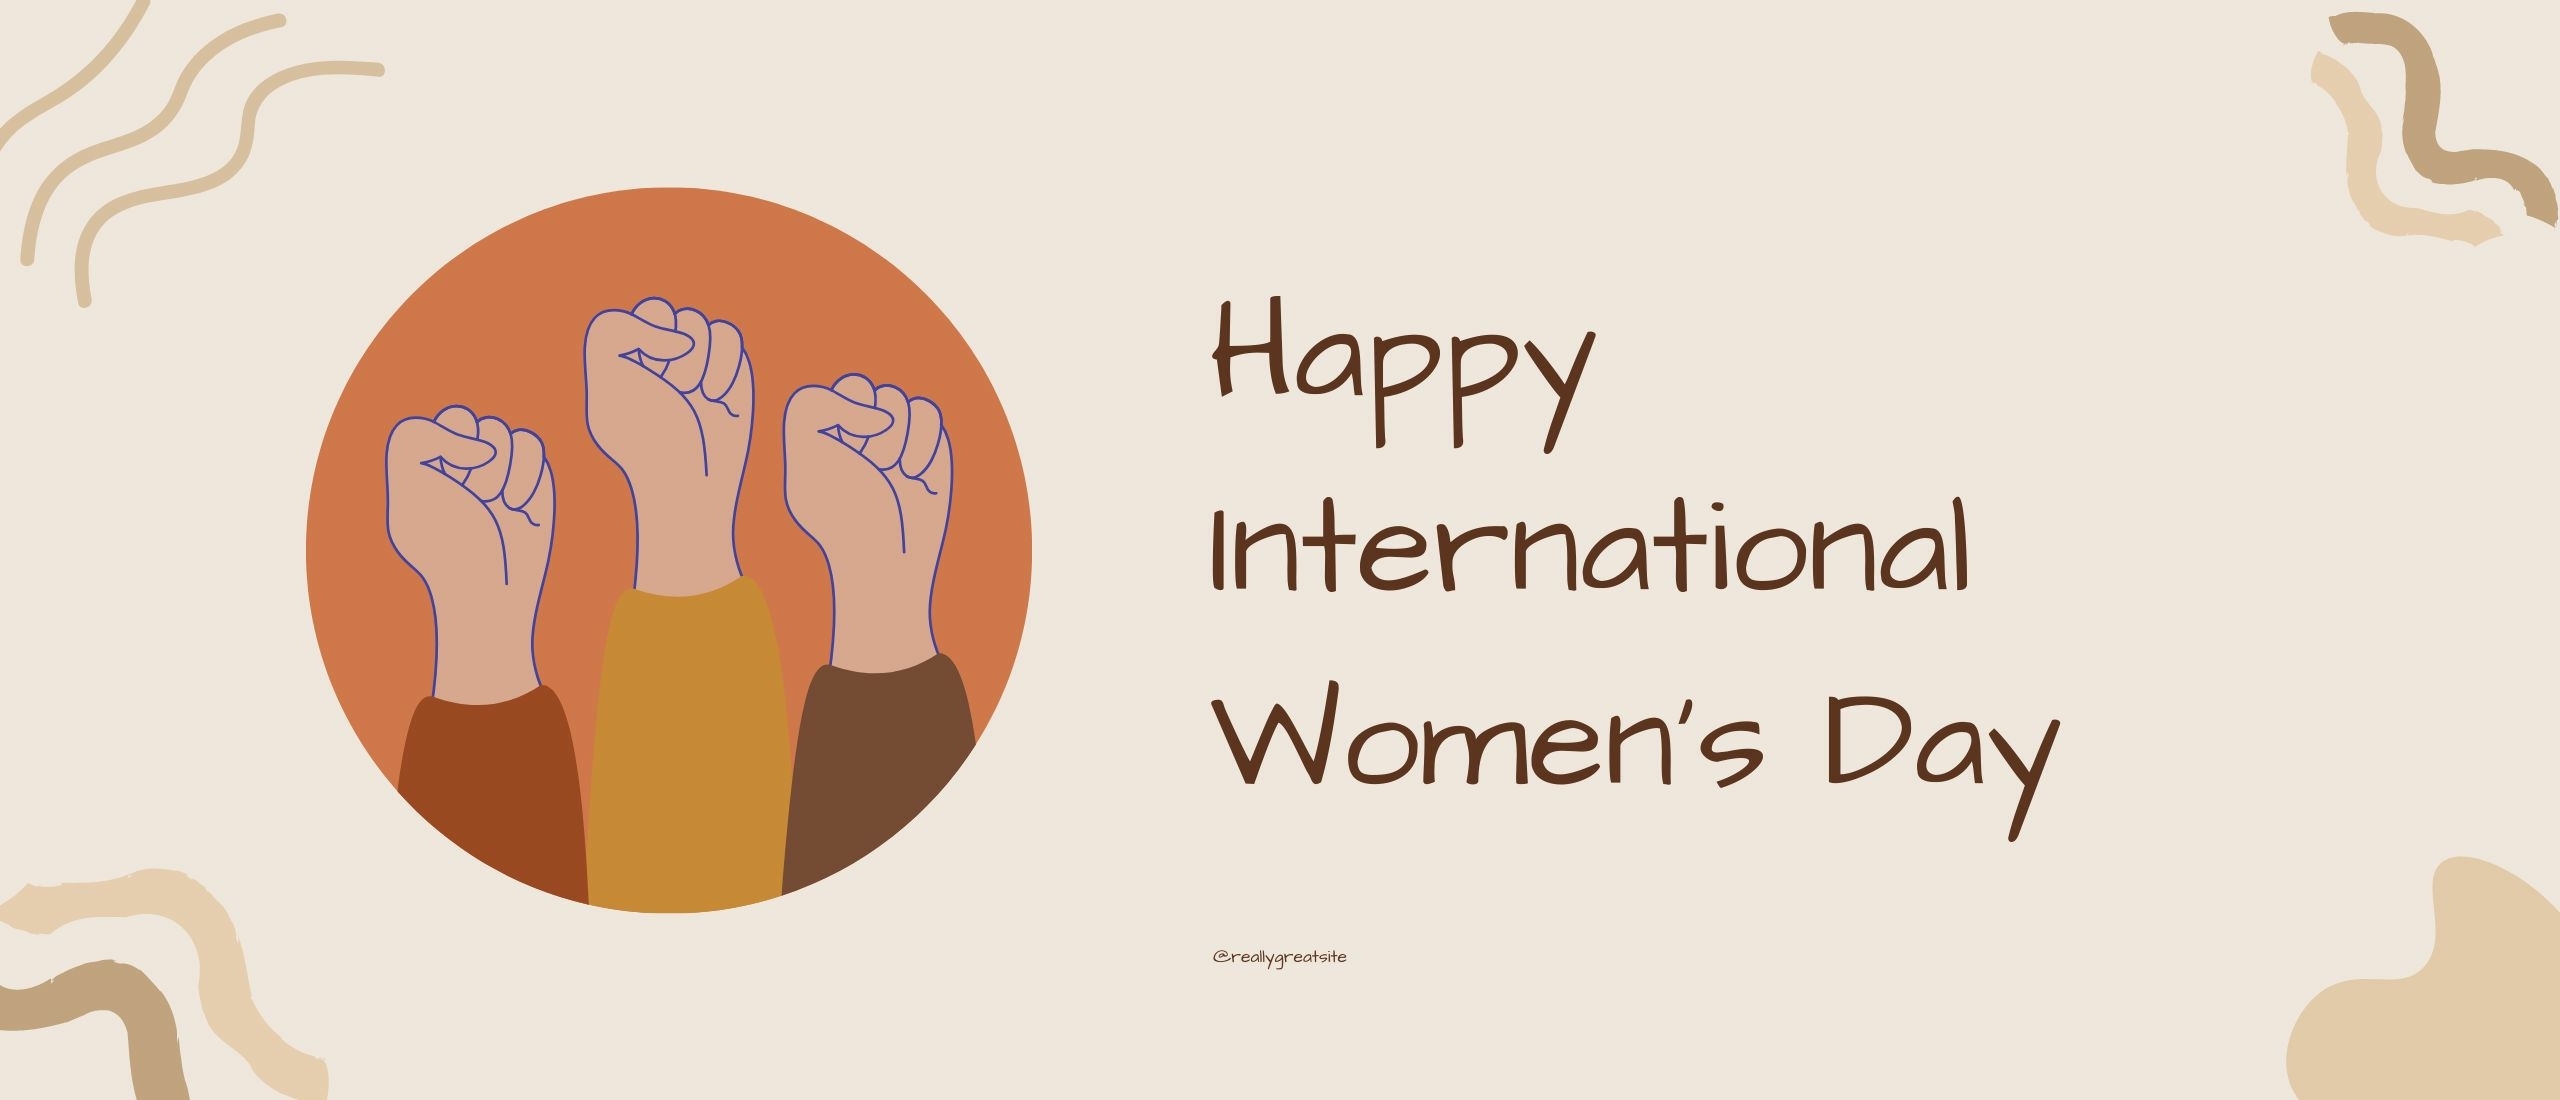 Hoe verhoudt International Women’s Day zich tot duurzaam beleggen?